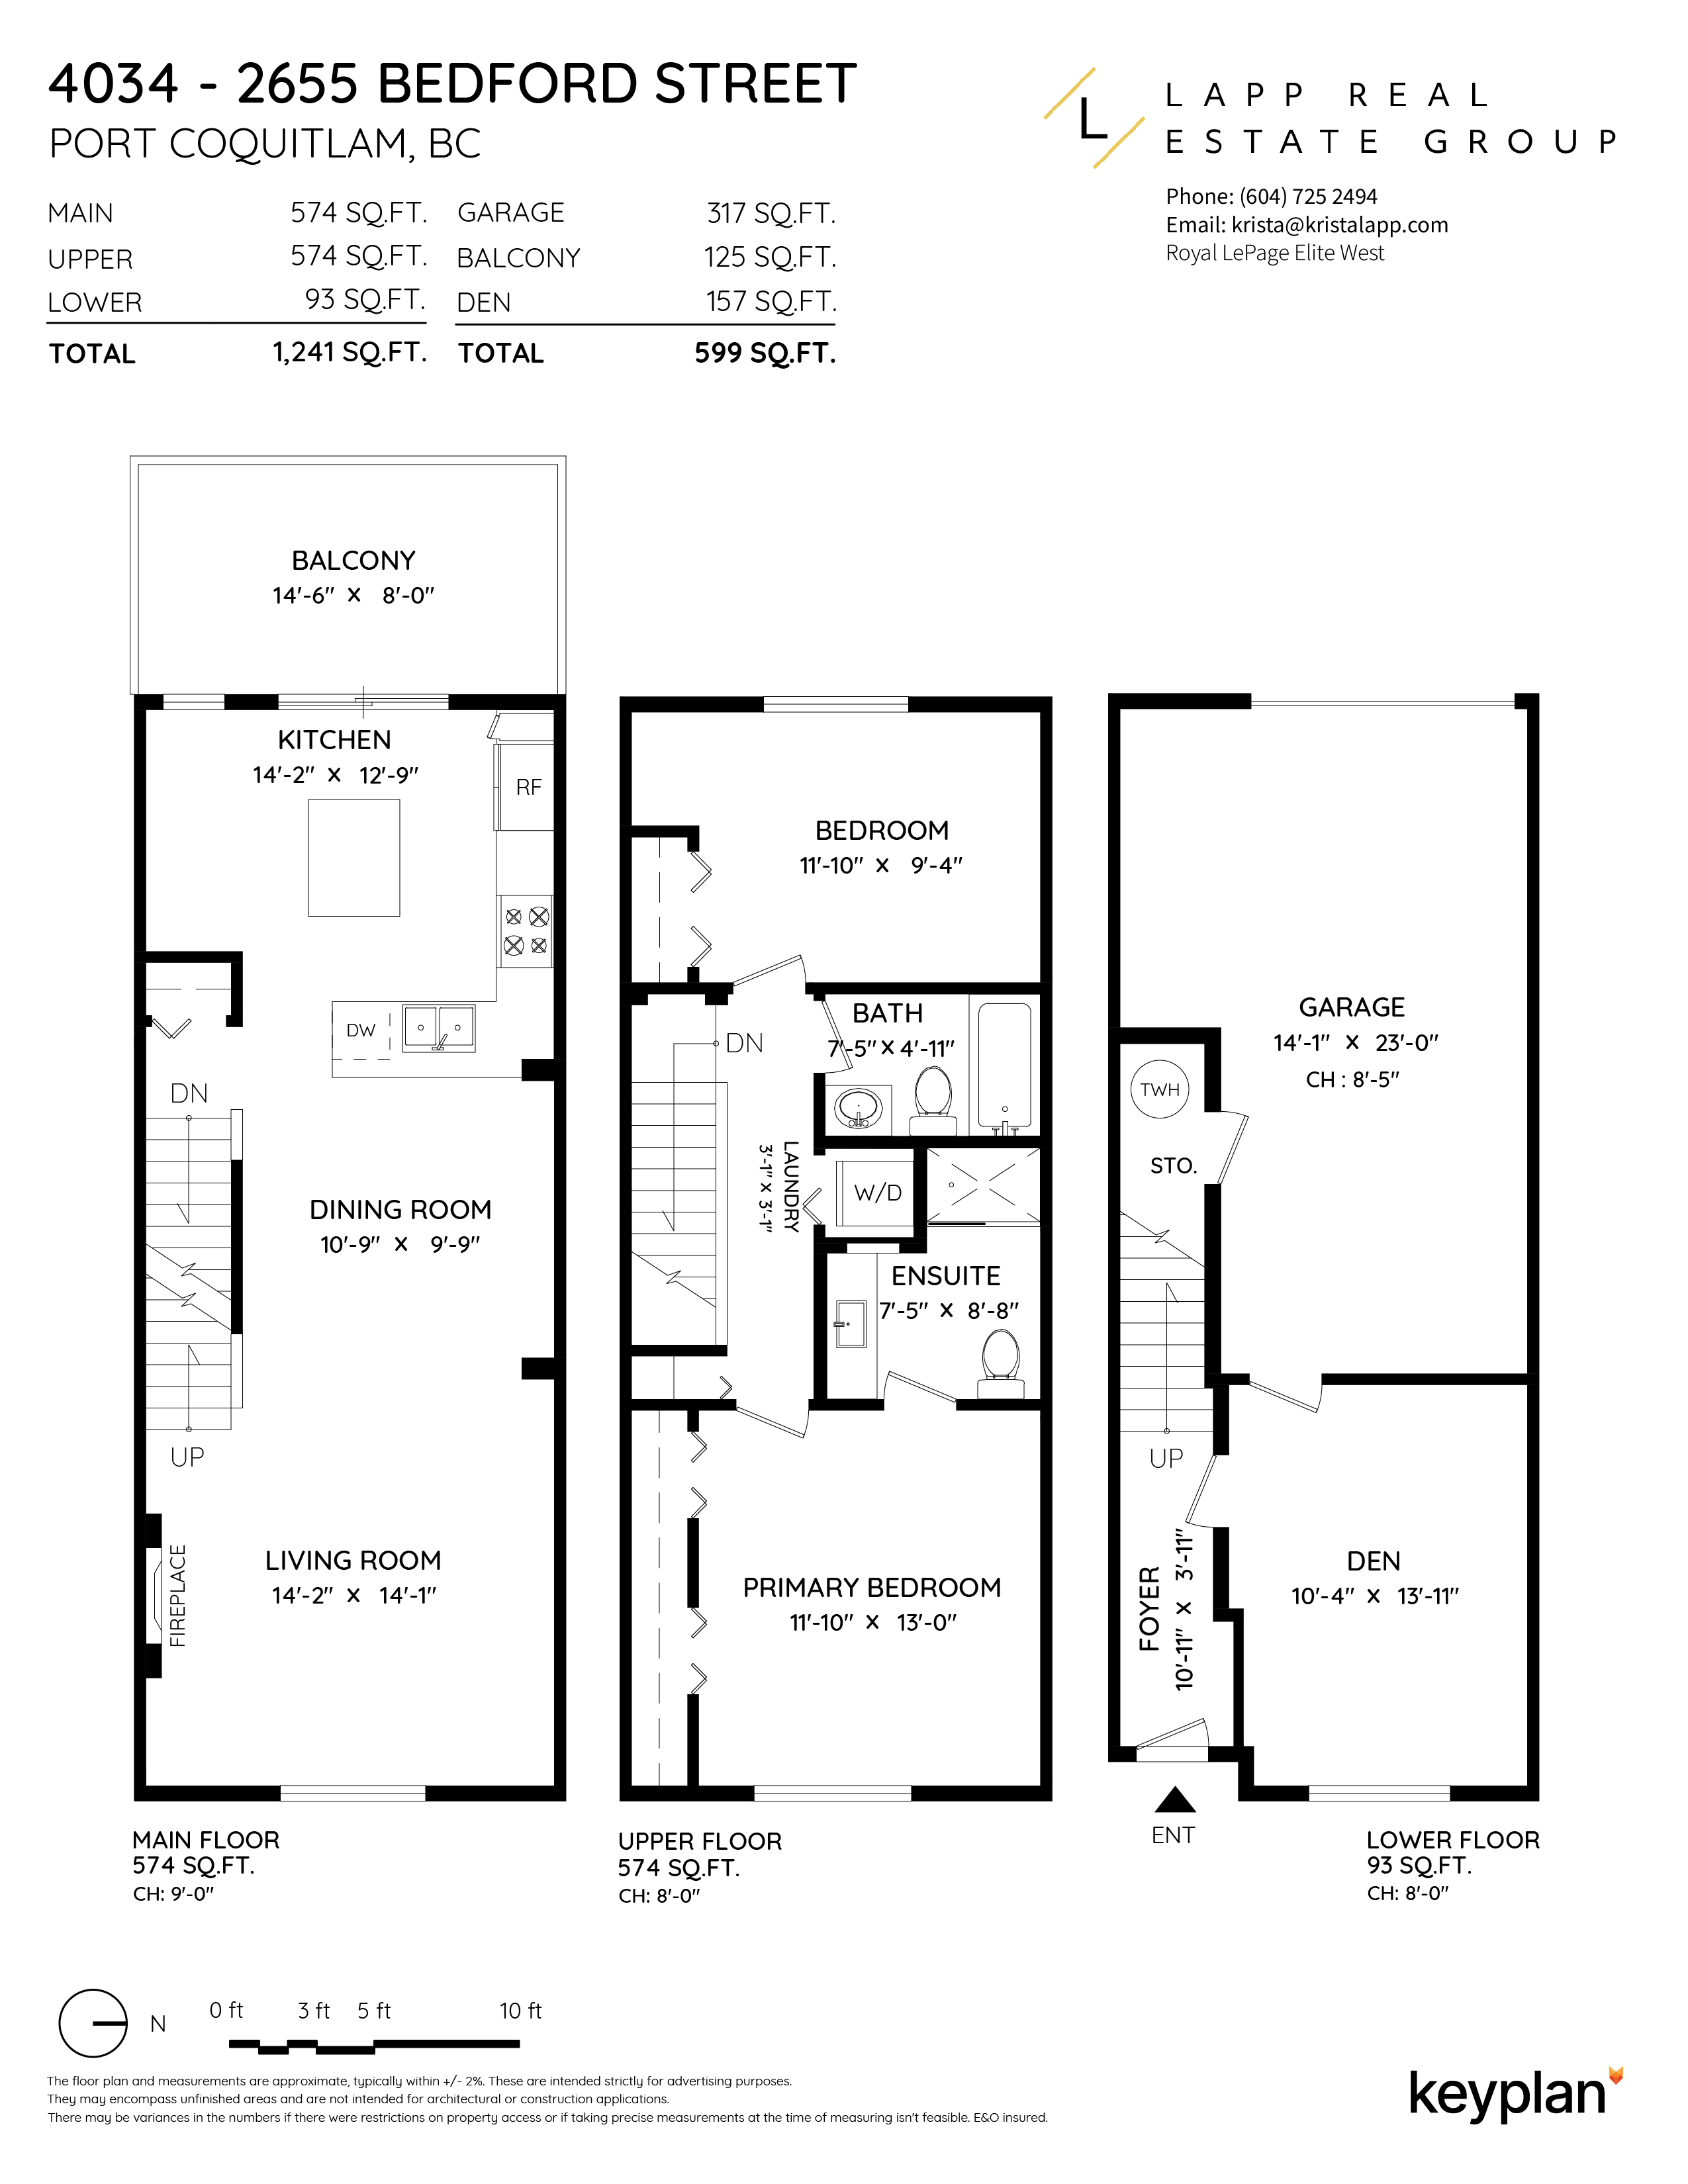 Krista Lapp - Unit 4034 - 2655 Bedford Street, Port Coquitlam, BC, Canada | Floor Plan 1